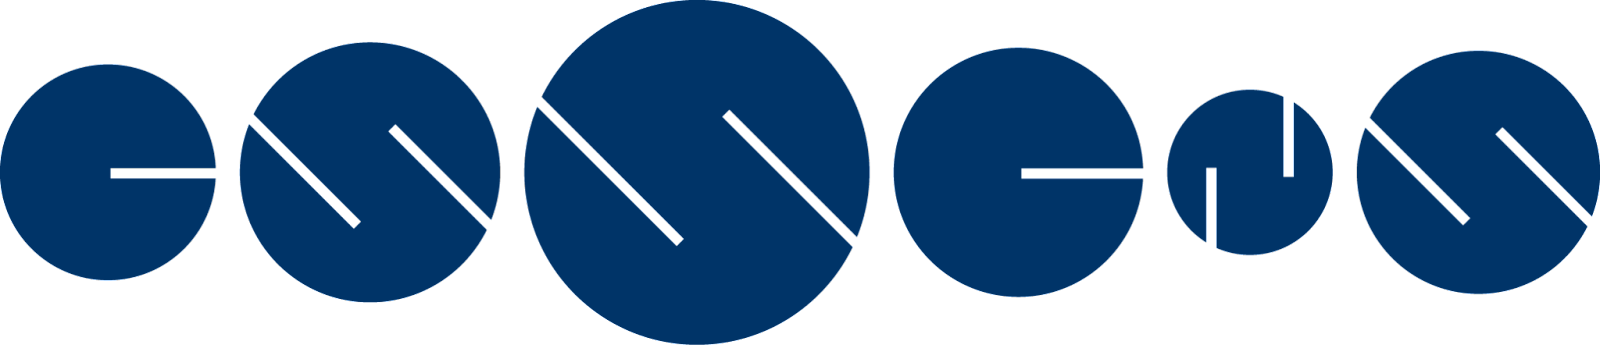 Essens World Company logo